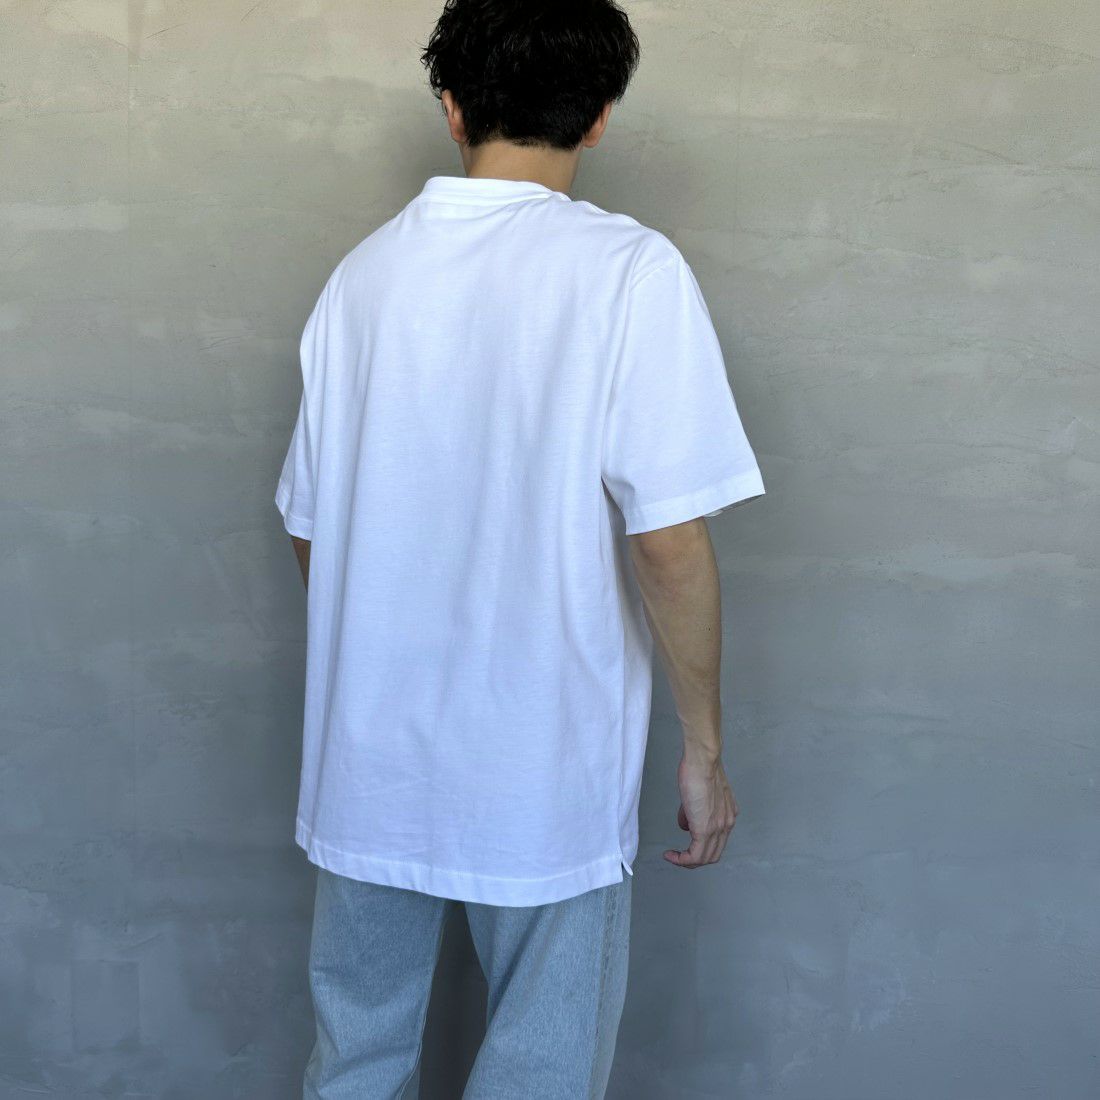 LACOSTE [ラコステ] アウトラインクロックポケットTシャツ [TH5581] 001 WHITE &&モデル身長：168cm 着用サイズ：6&&